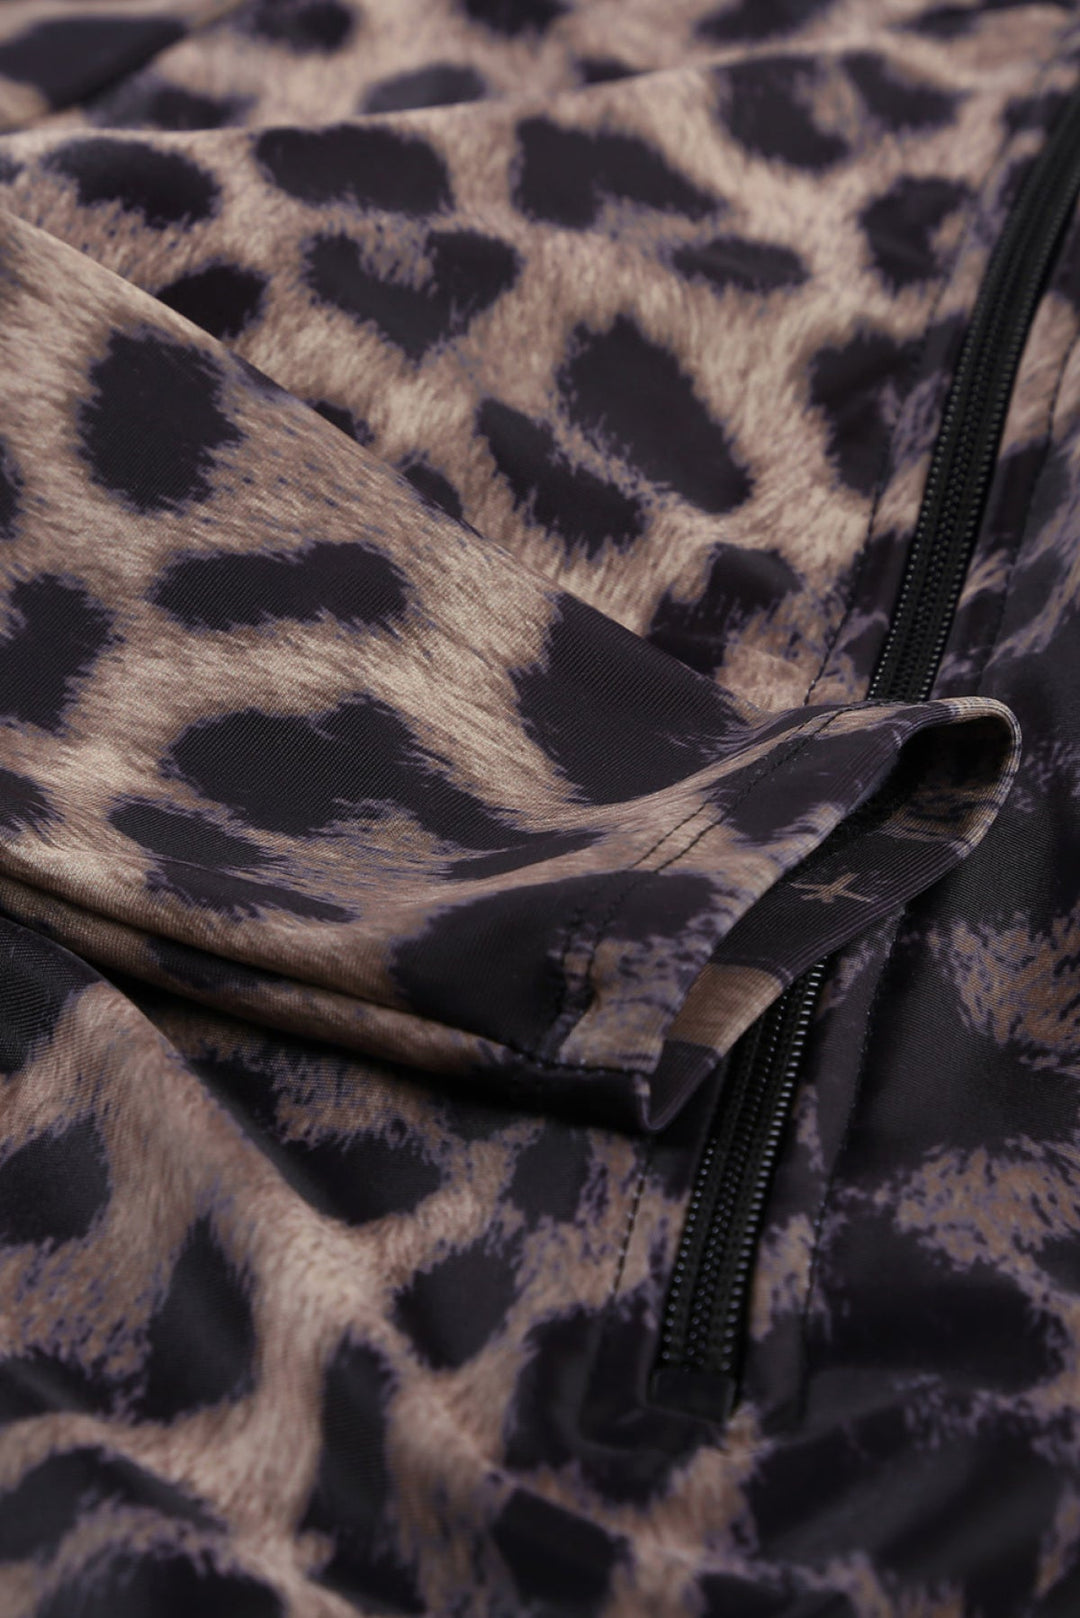 Leopard Print Zipper Cut-Out Swimsuit